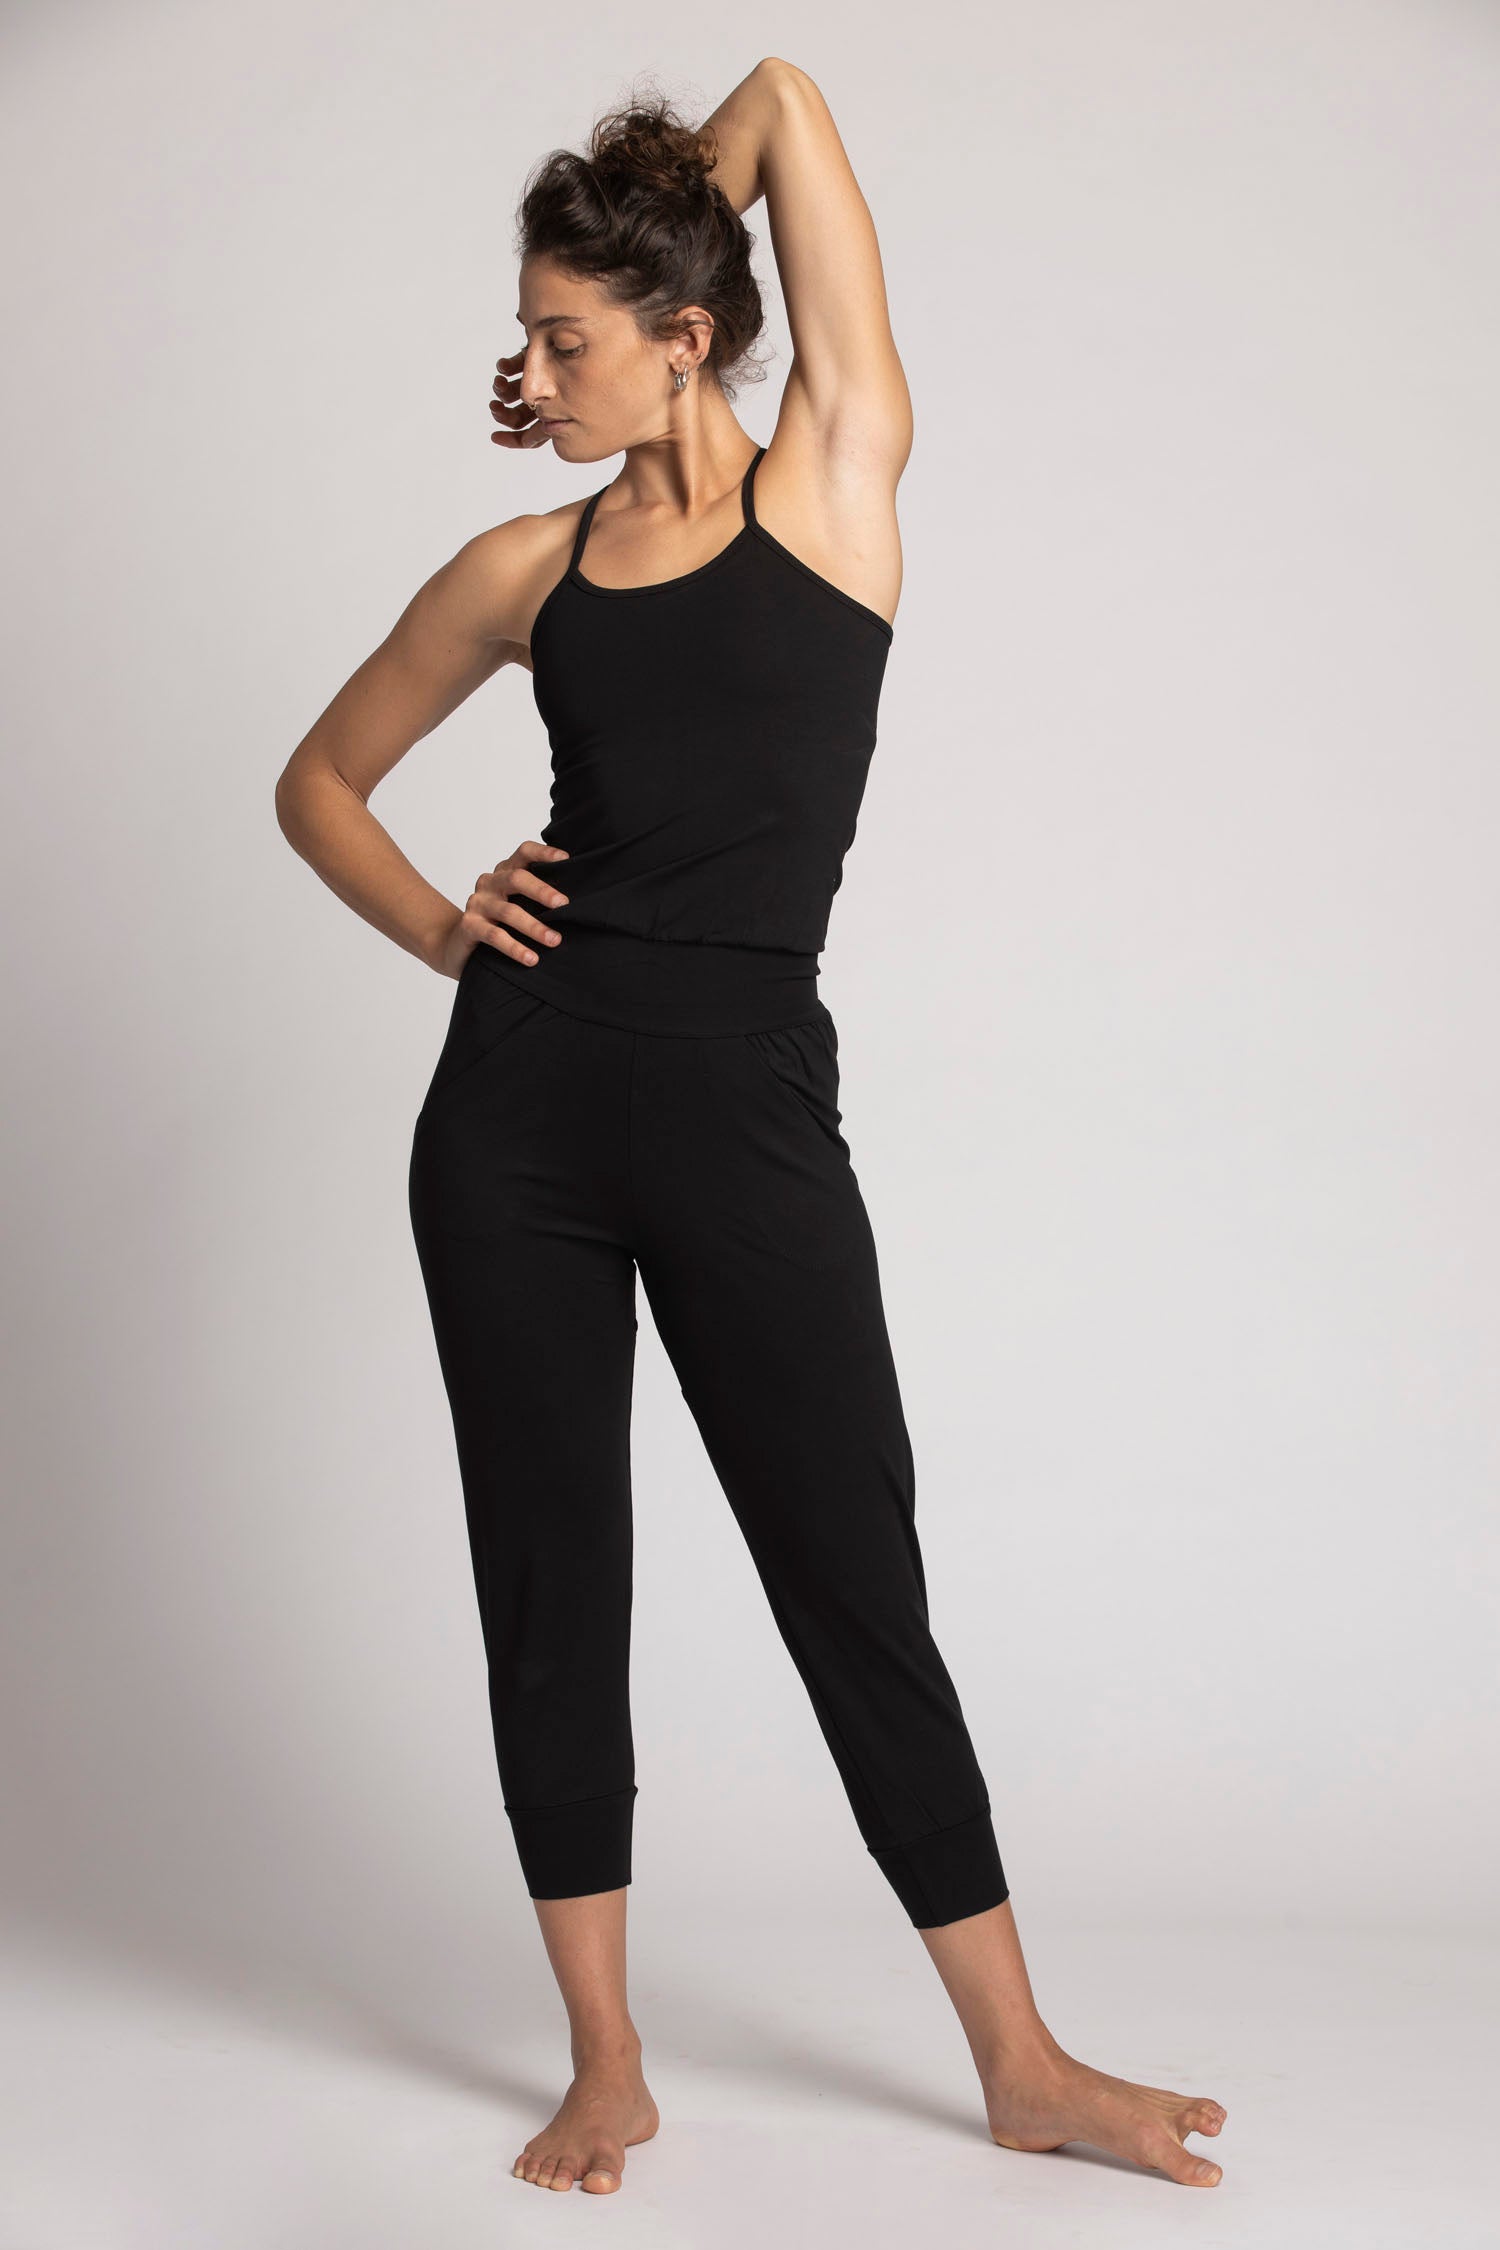 https://rippleyogawear.com/cdn/shop/products/yoga-jumpsuit-womens-clothing-ripple-yoga-wear-black-m-629855_ee962fd1-72f3-447a-9838-e629a33633e4.jpg?v=1700227958